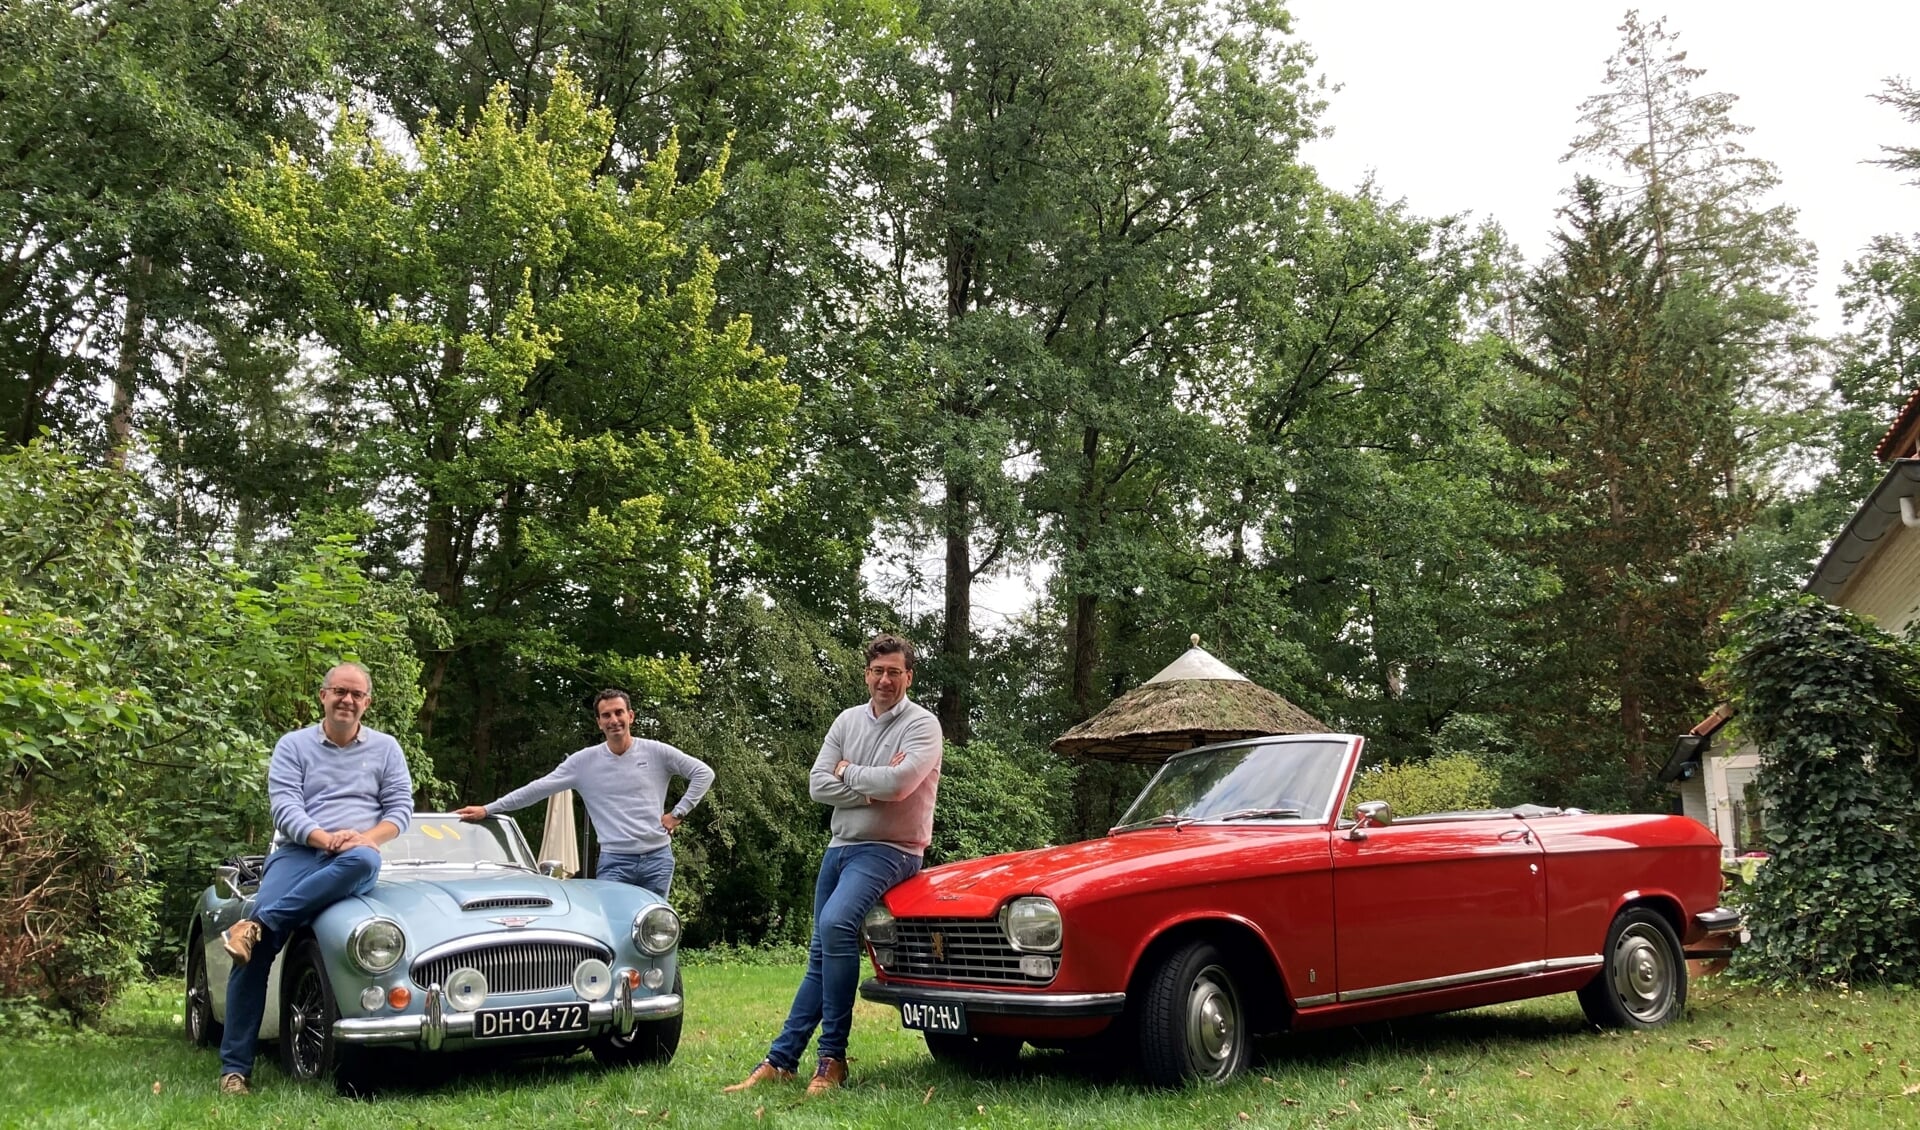 Jan-Carel Redelé, Roderik van Asdonk en Ernst Brunner (Jos Wetters niet in beeld) verwelkomen liefhebbers van klassieke auto’s om ook deel te nemen aan de rally.